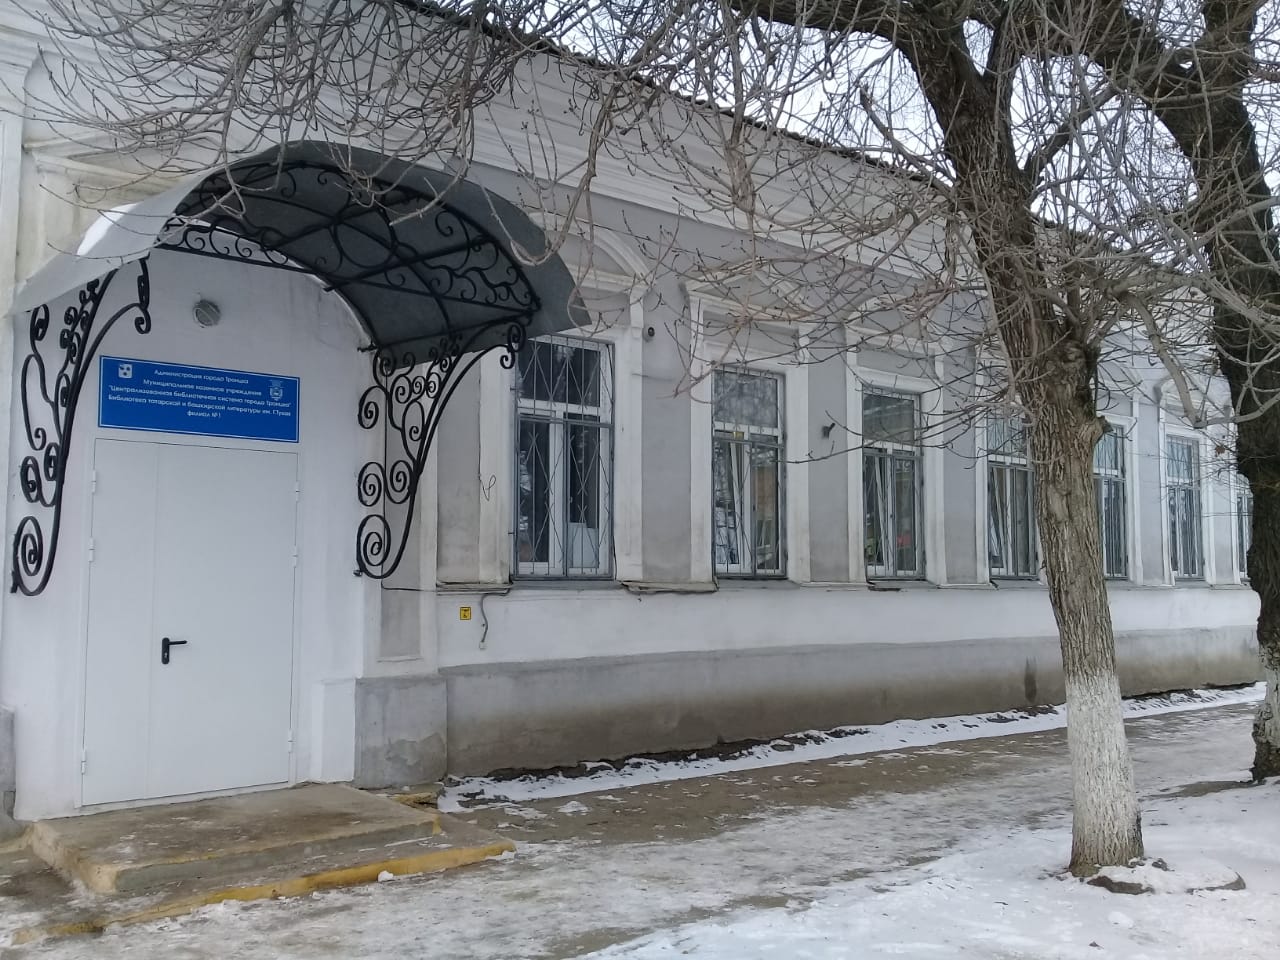 Татар библиотек